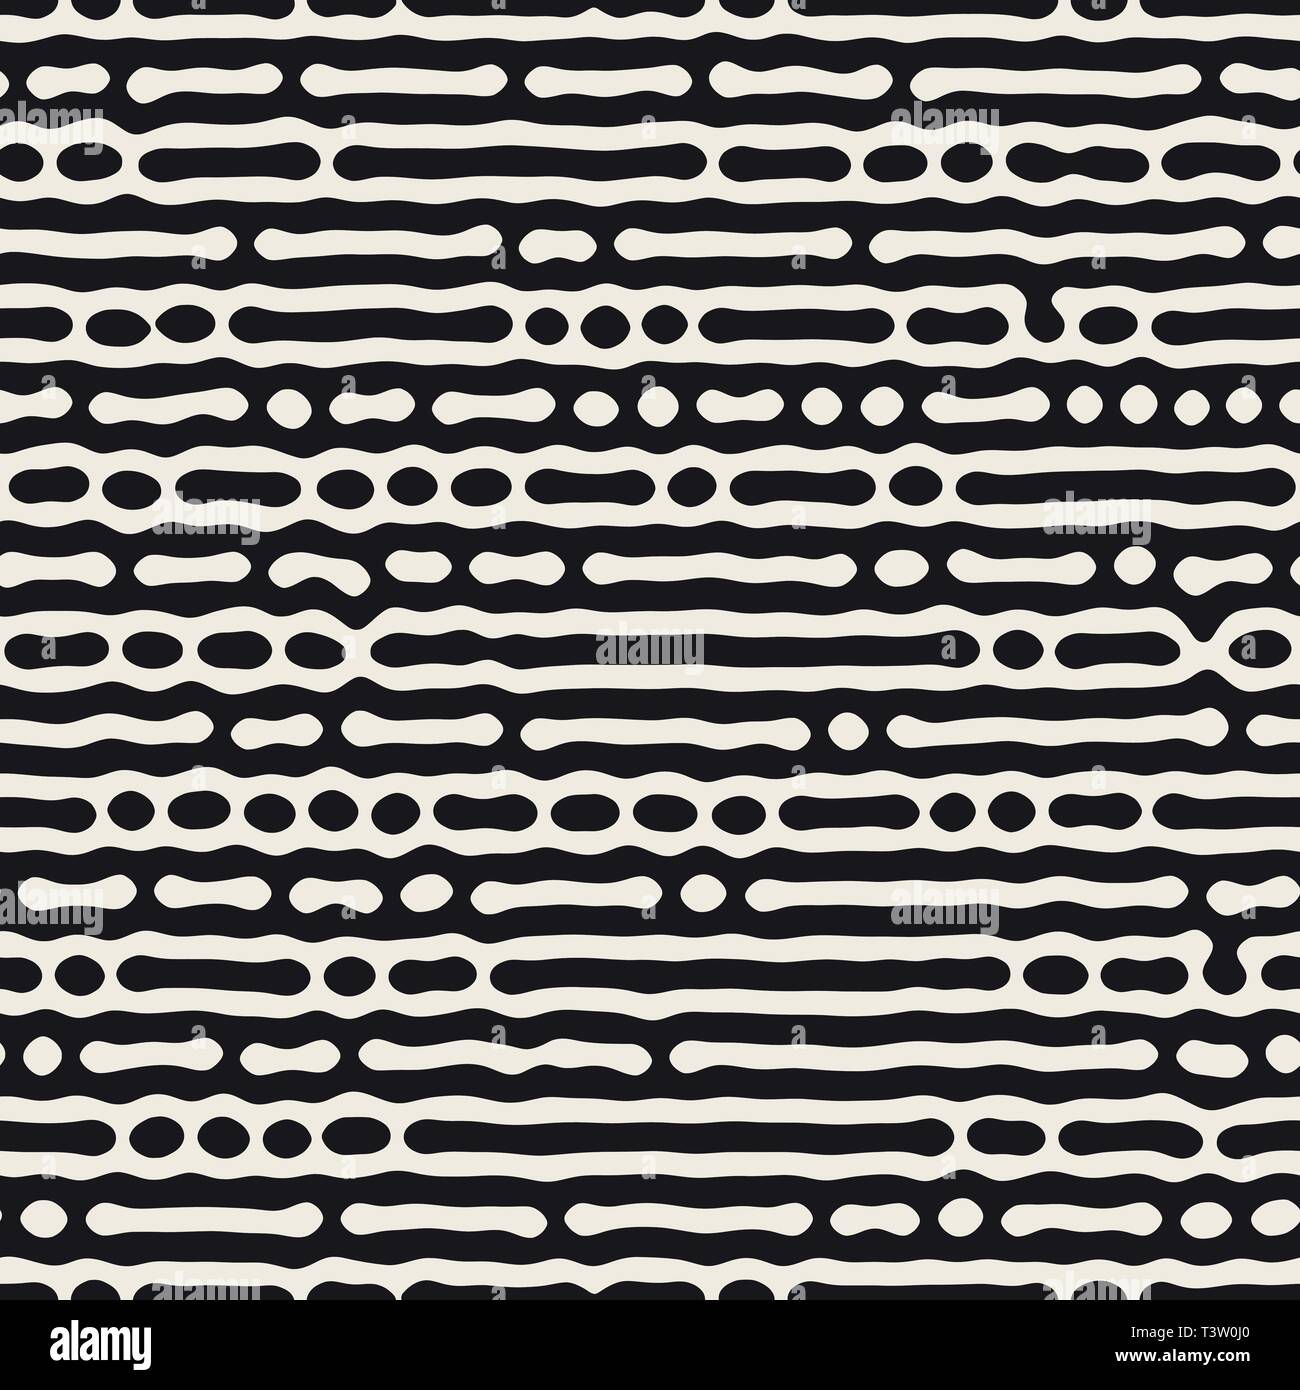 Vector seamless pattern. Monocromatico forme organiche texture. Abstract arrotondati linee disordinato sfondo elegante. Illustrazione Vettoriale